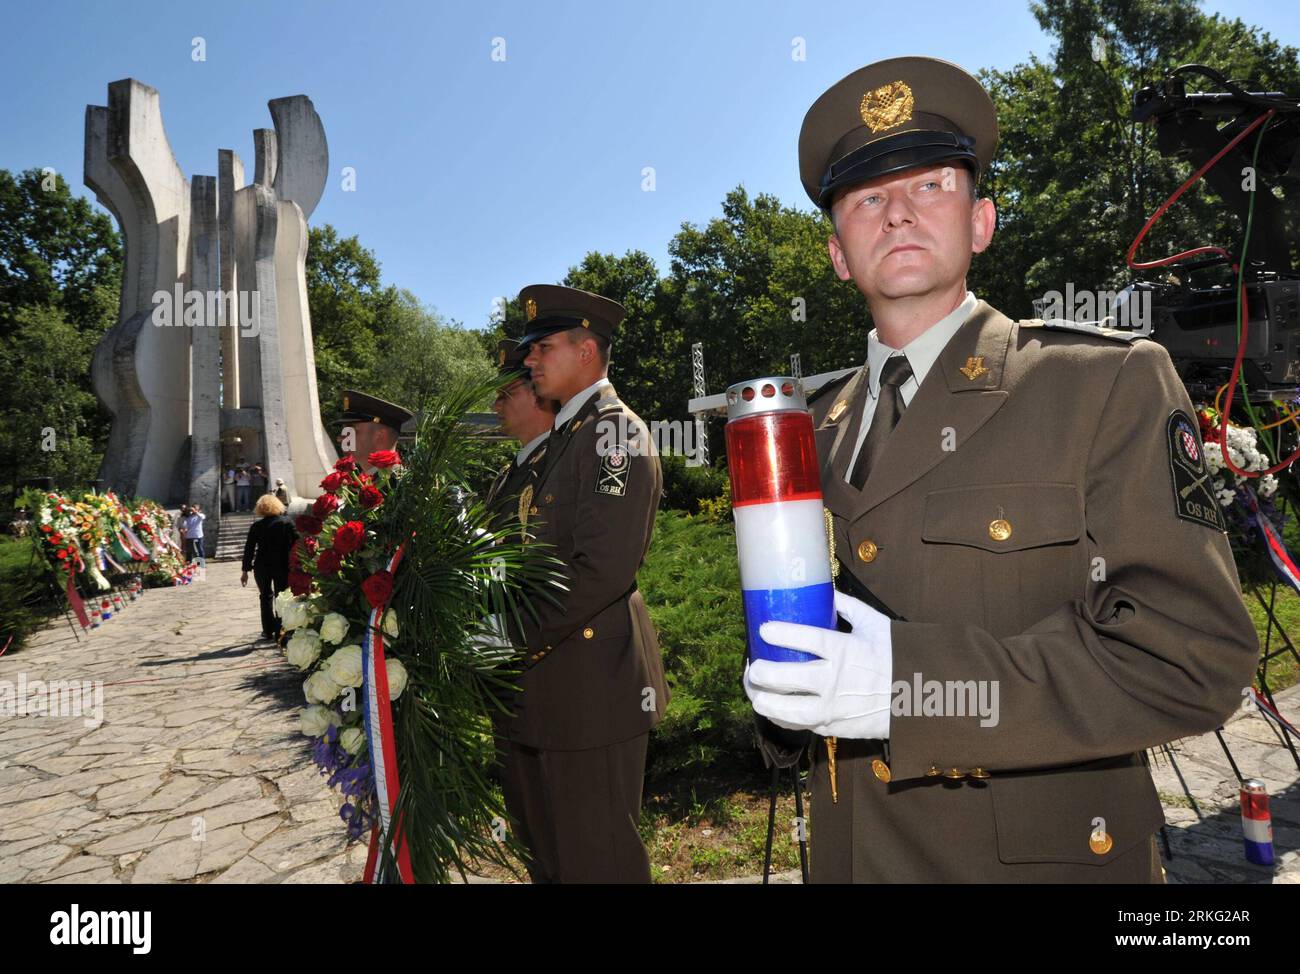 Bildnummer: 55535122 Datum: 22.06.2011 Copyright: imago/Xinhua (110622) -- SISAK, 22 giugno 2011 (Xinhua) -- Un soldato croato tiene una candela vicino al monumento eretto in omaggio alla prima unità partigiana di 79 uomini nella foresta di Brezovica vicino a Sisak, Croazia, 22 giugno 2011. La commemorazione principale che ha visto la giornata della lotta anti-fascista della Croazia segna il 70° anniversario della fondazione della prima unità armata antifascista in Croazia. La prima brigata partigiana fu formata nella foresta croata di Brezovica il 22 giugno 1941. (Xinhua/Miso Lisanin) (msq) CROAZIA-GIORNATA DI LOTTA ANTIFASCISTA PU Foto Stock